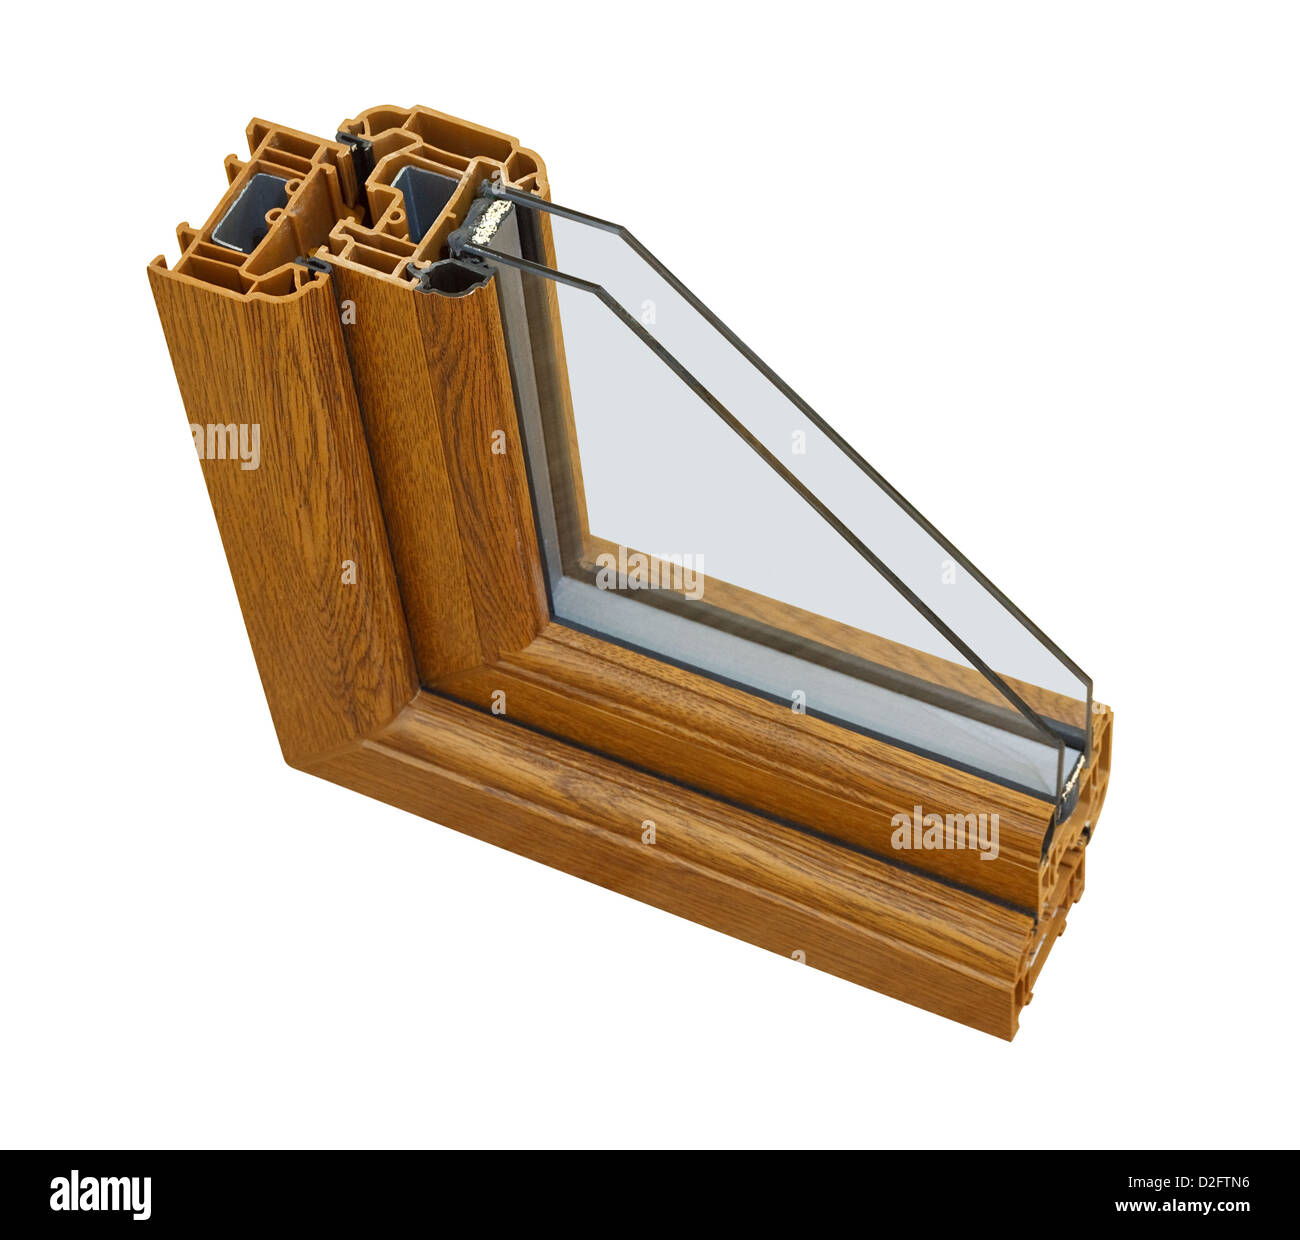 Una sección transversal de doble acristalamiento efecto de madera cortada para mostrar el perfil interior y la calidad de la construcción Foto de stock